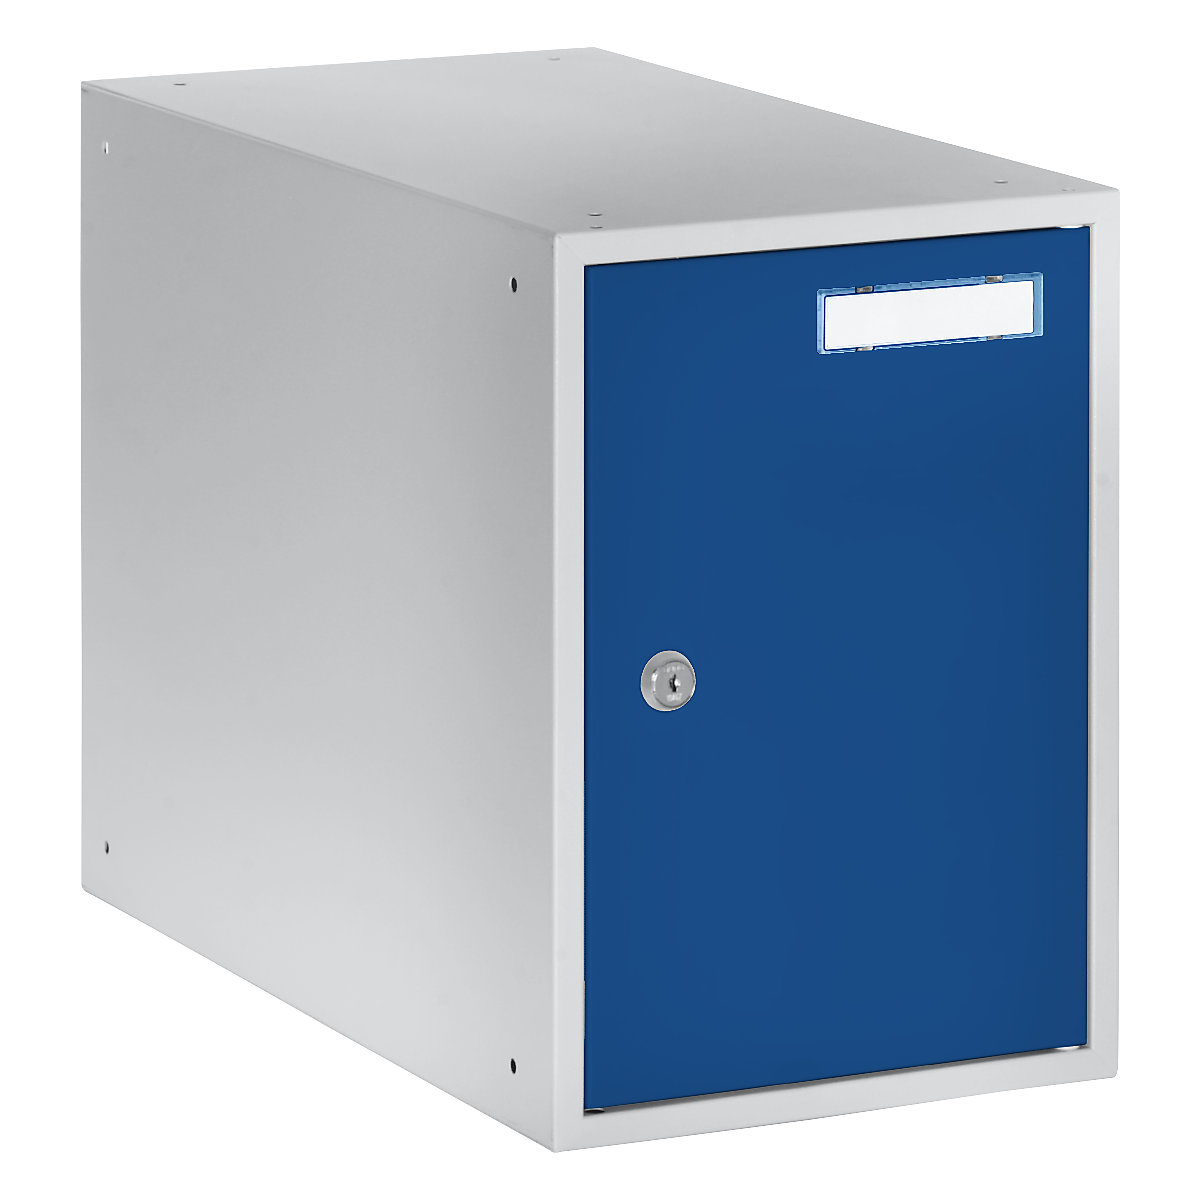 EUROKRAFTbasic – Casier verrouillable, h x l x p 350 x 250 x 450 mm, corps gris clair / portes bleu gentiane